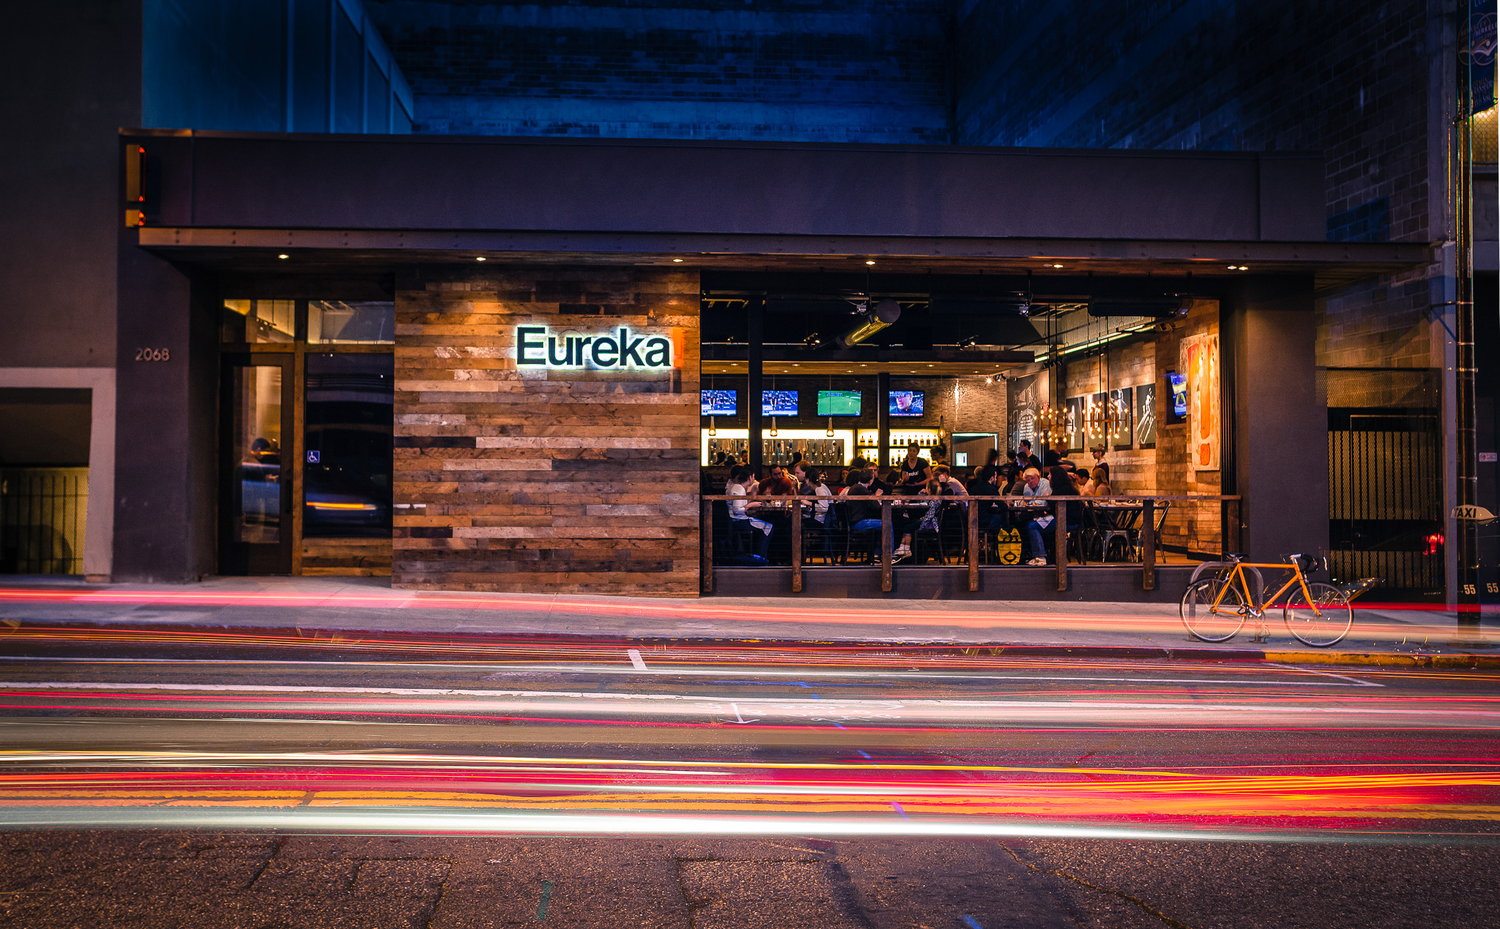 eureka-berkeley-restaurant-architecture-001